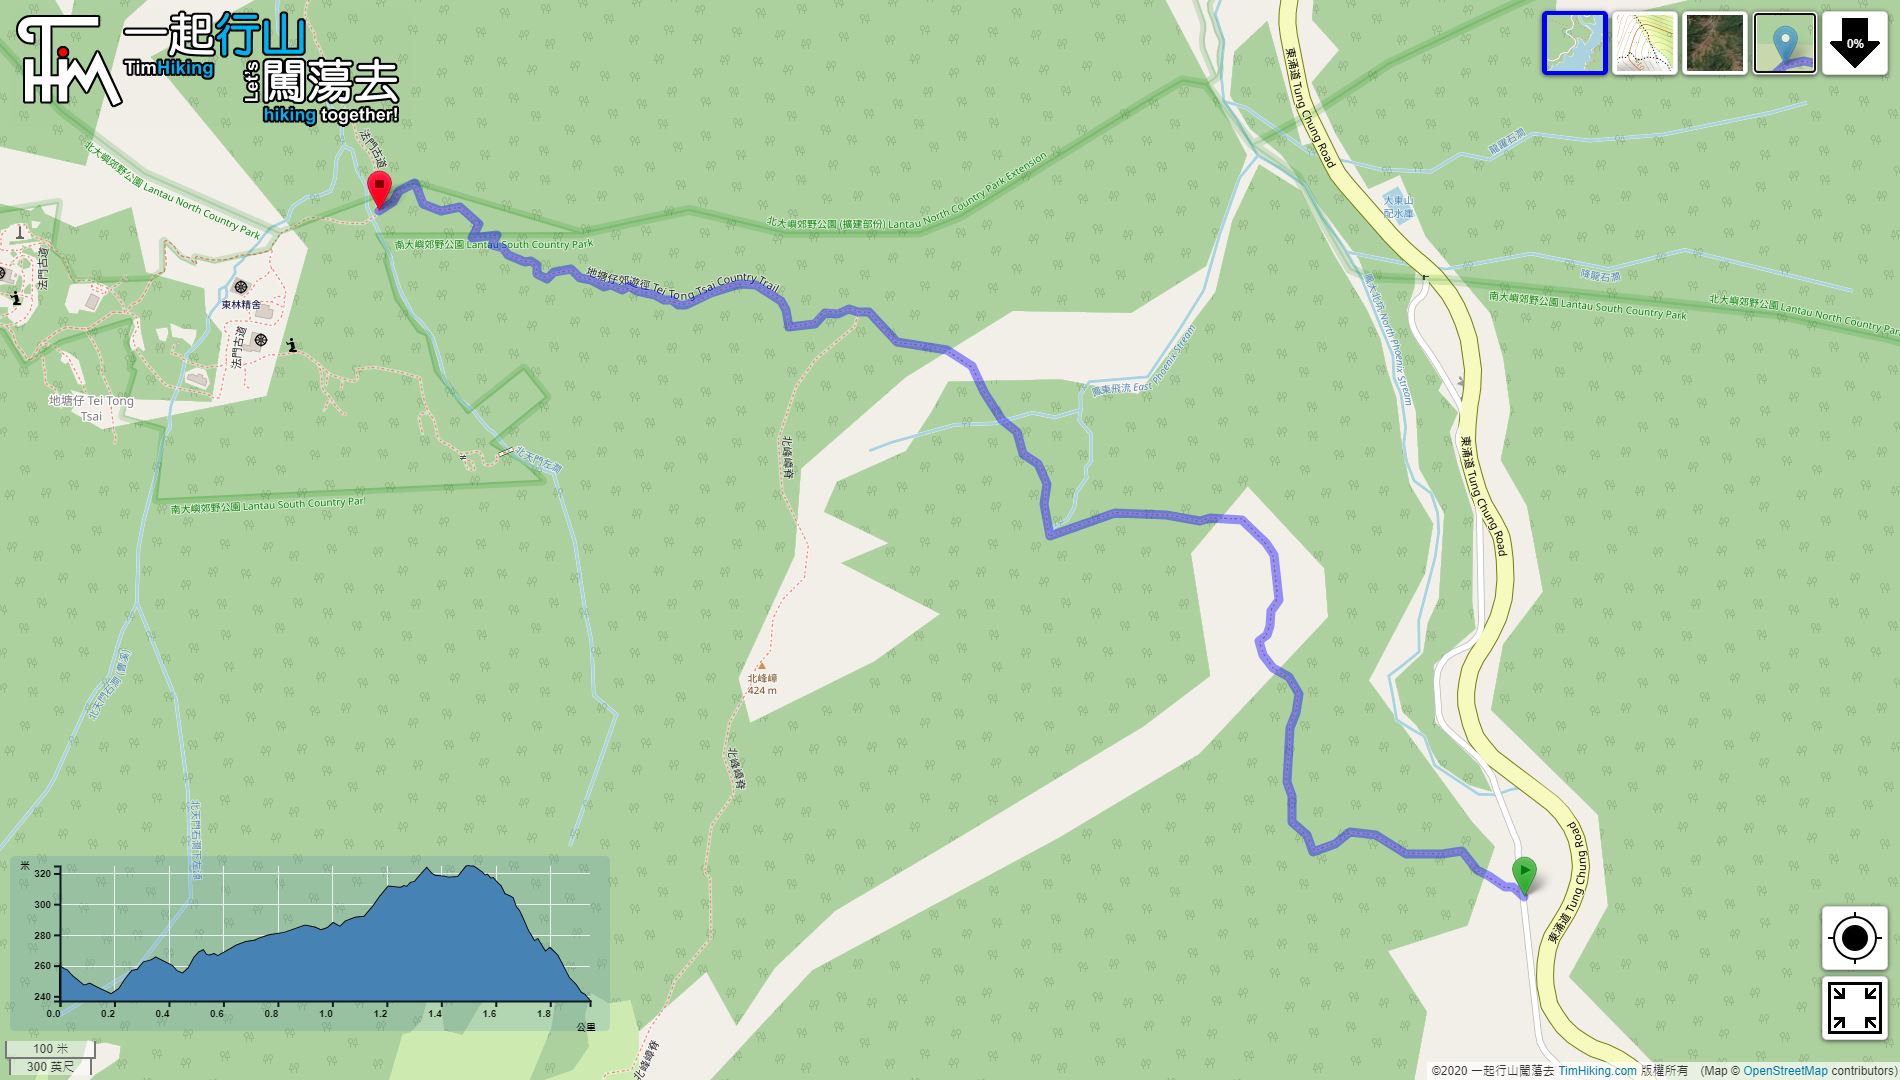 「Tei Tong Tsai Country Trail」路線Map